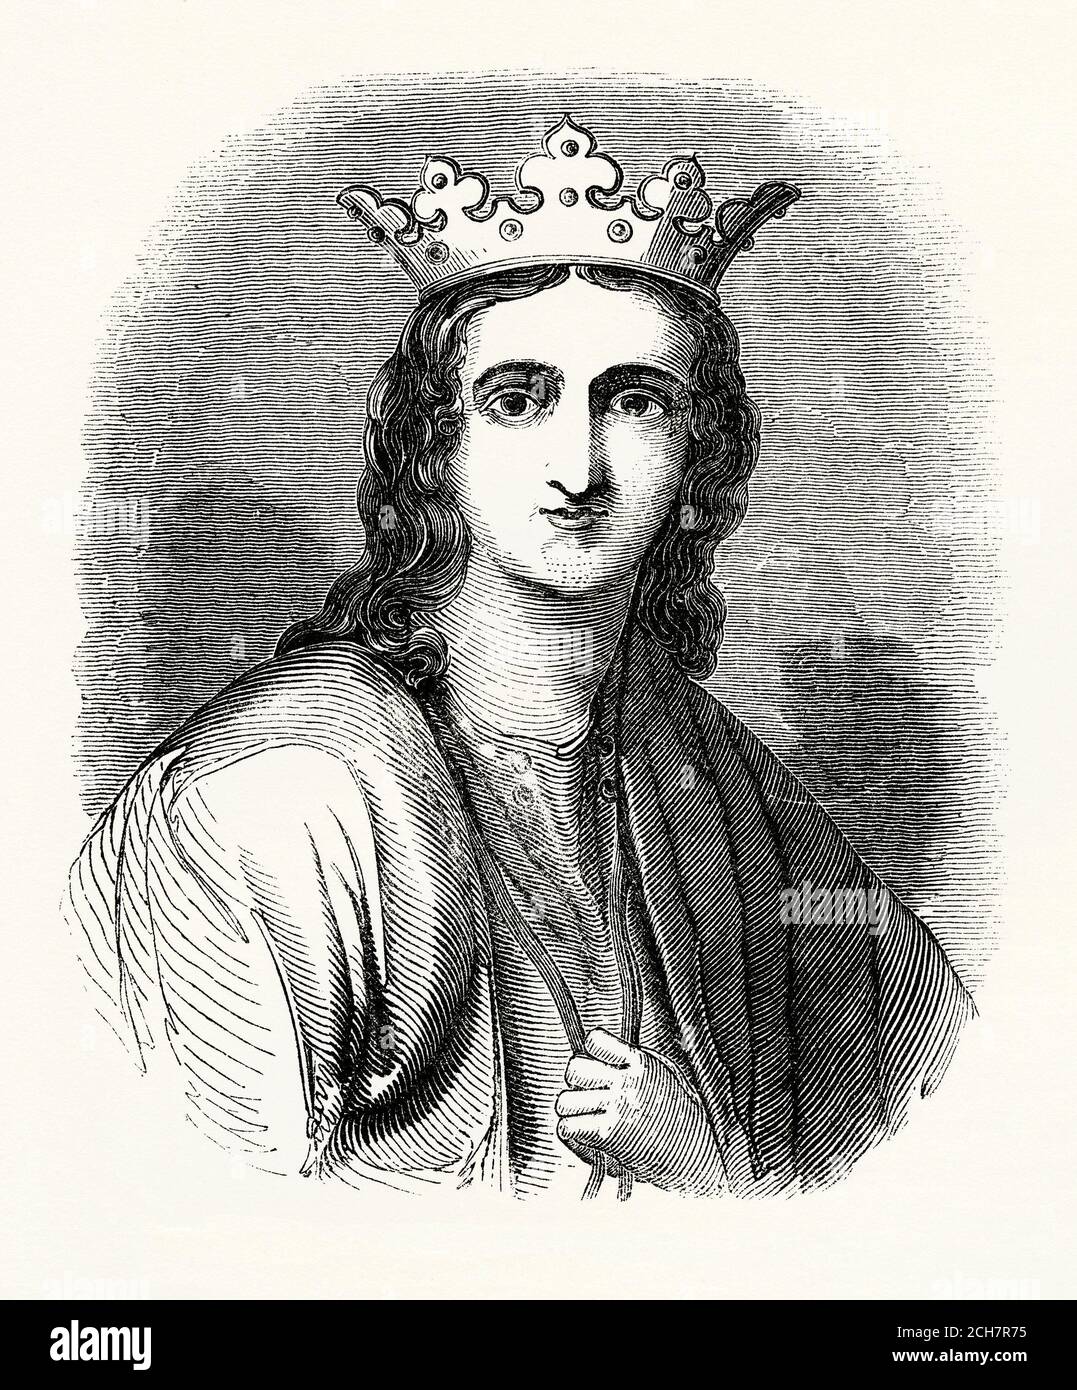 Une ancienne gravure d'Eleanor de Castille (1241–1290). Eleanor était une reine consort anglaise, la première femme d'Edward I, qu'elle a épousée dans le cadre d'un arrangement politique pour donner la souveraineté anglaise sur la Gascogne en Europe. Le mariage était connu pour être particulièrement proche et Eleanor a beaucoup voyagé avec son mari. Elle était avec lui sur la neuvième Croisade, quand il a été blessé à Acre. Lorsqu'elle mourut dans le Lincolnshire, son mari affligé a commandé une croix de pierre à ériger à chaque arrêt de leur voyage de retour à Londres, se terminant à Charing Cross. Banque D'Images